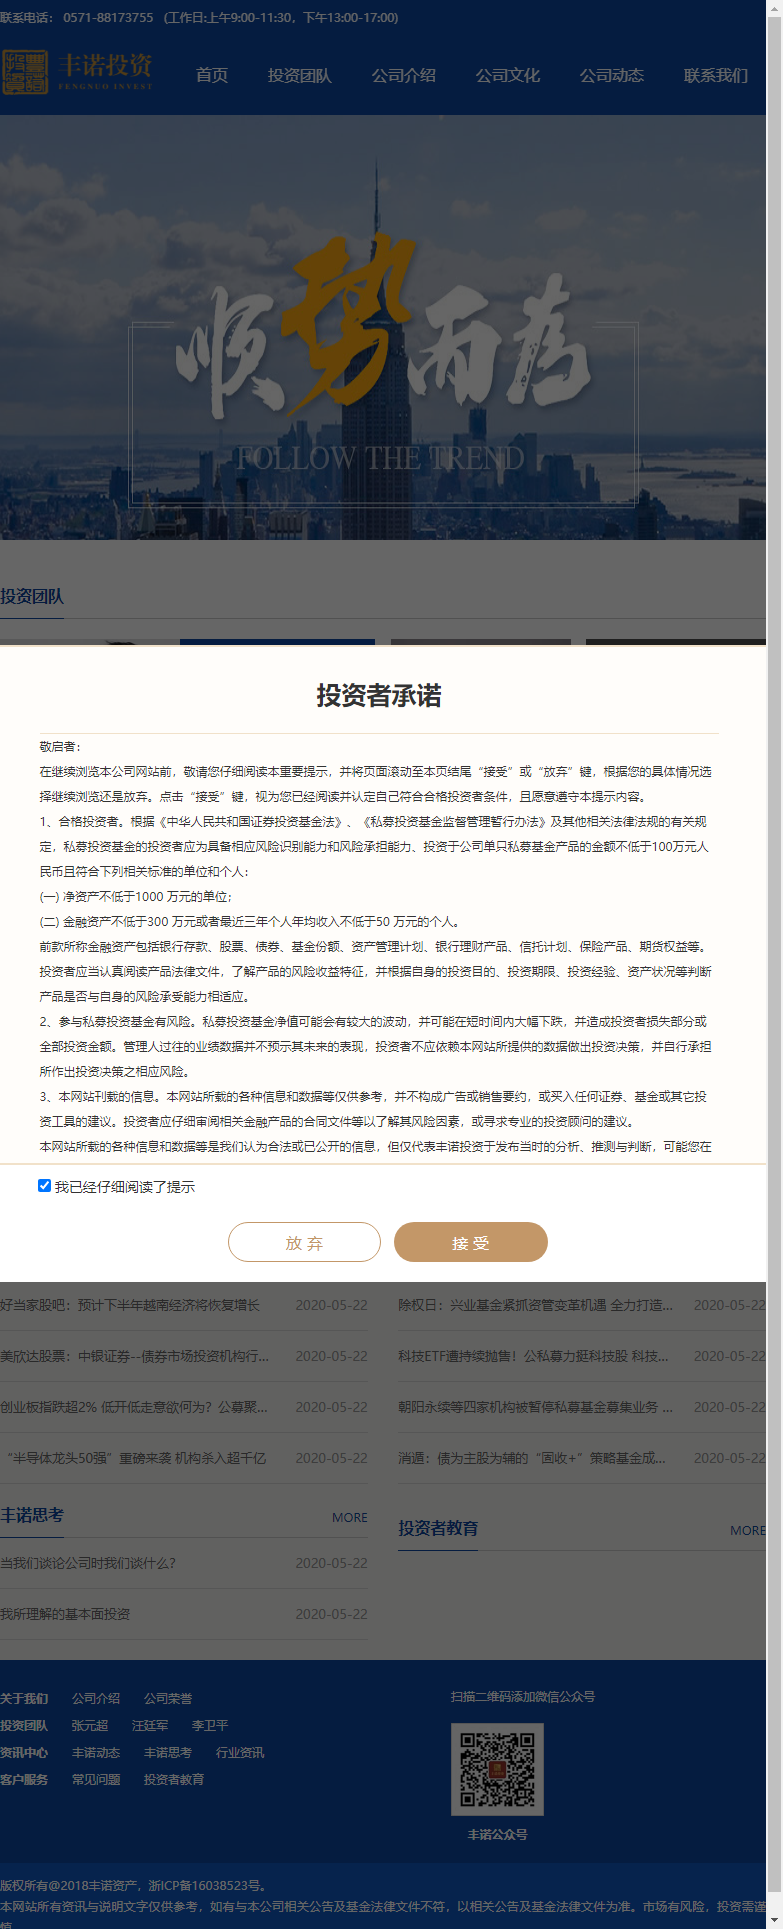 浙江丰诺投资管理有限公司网站案例